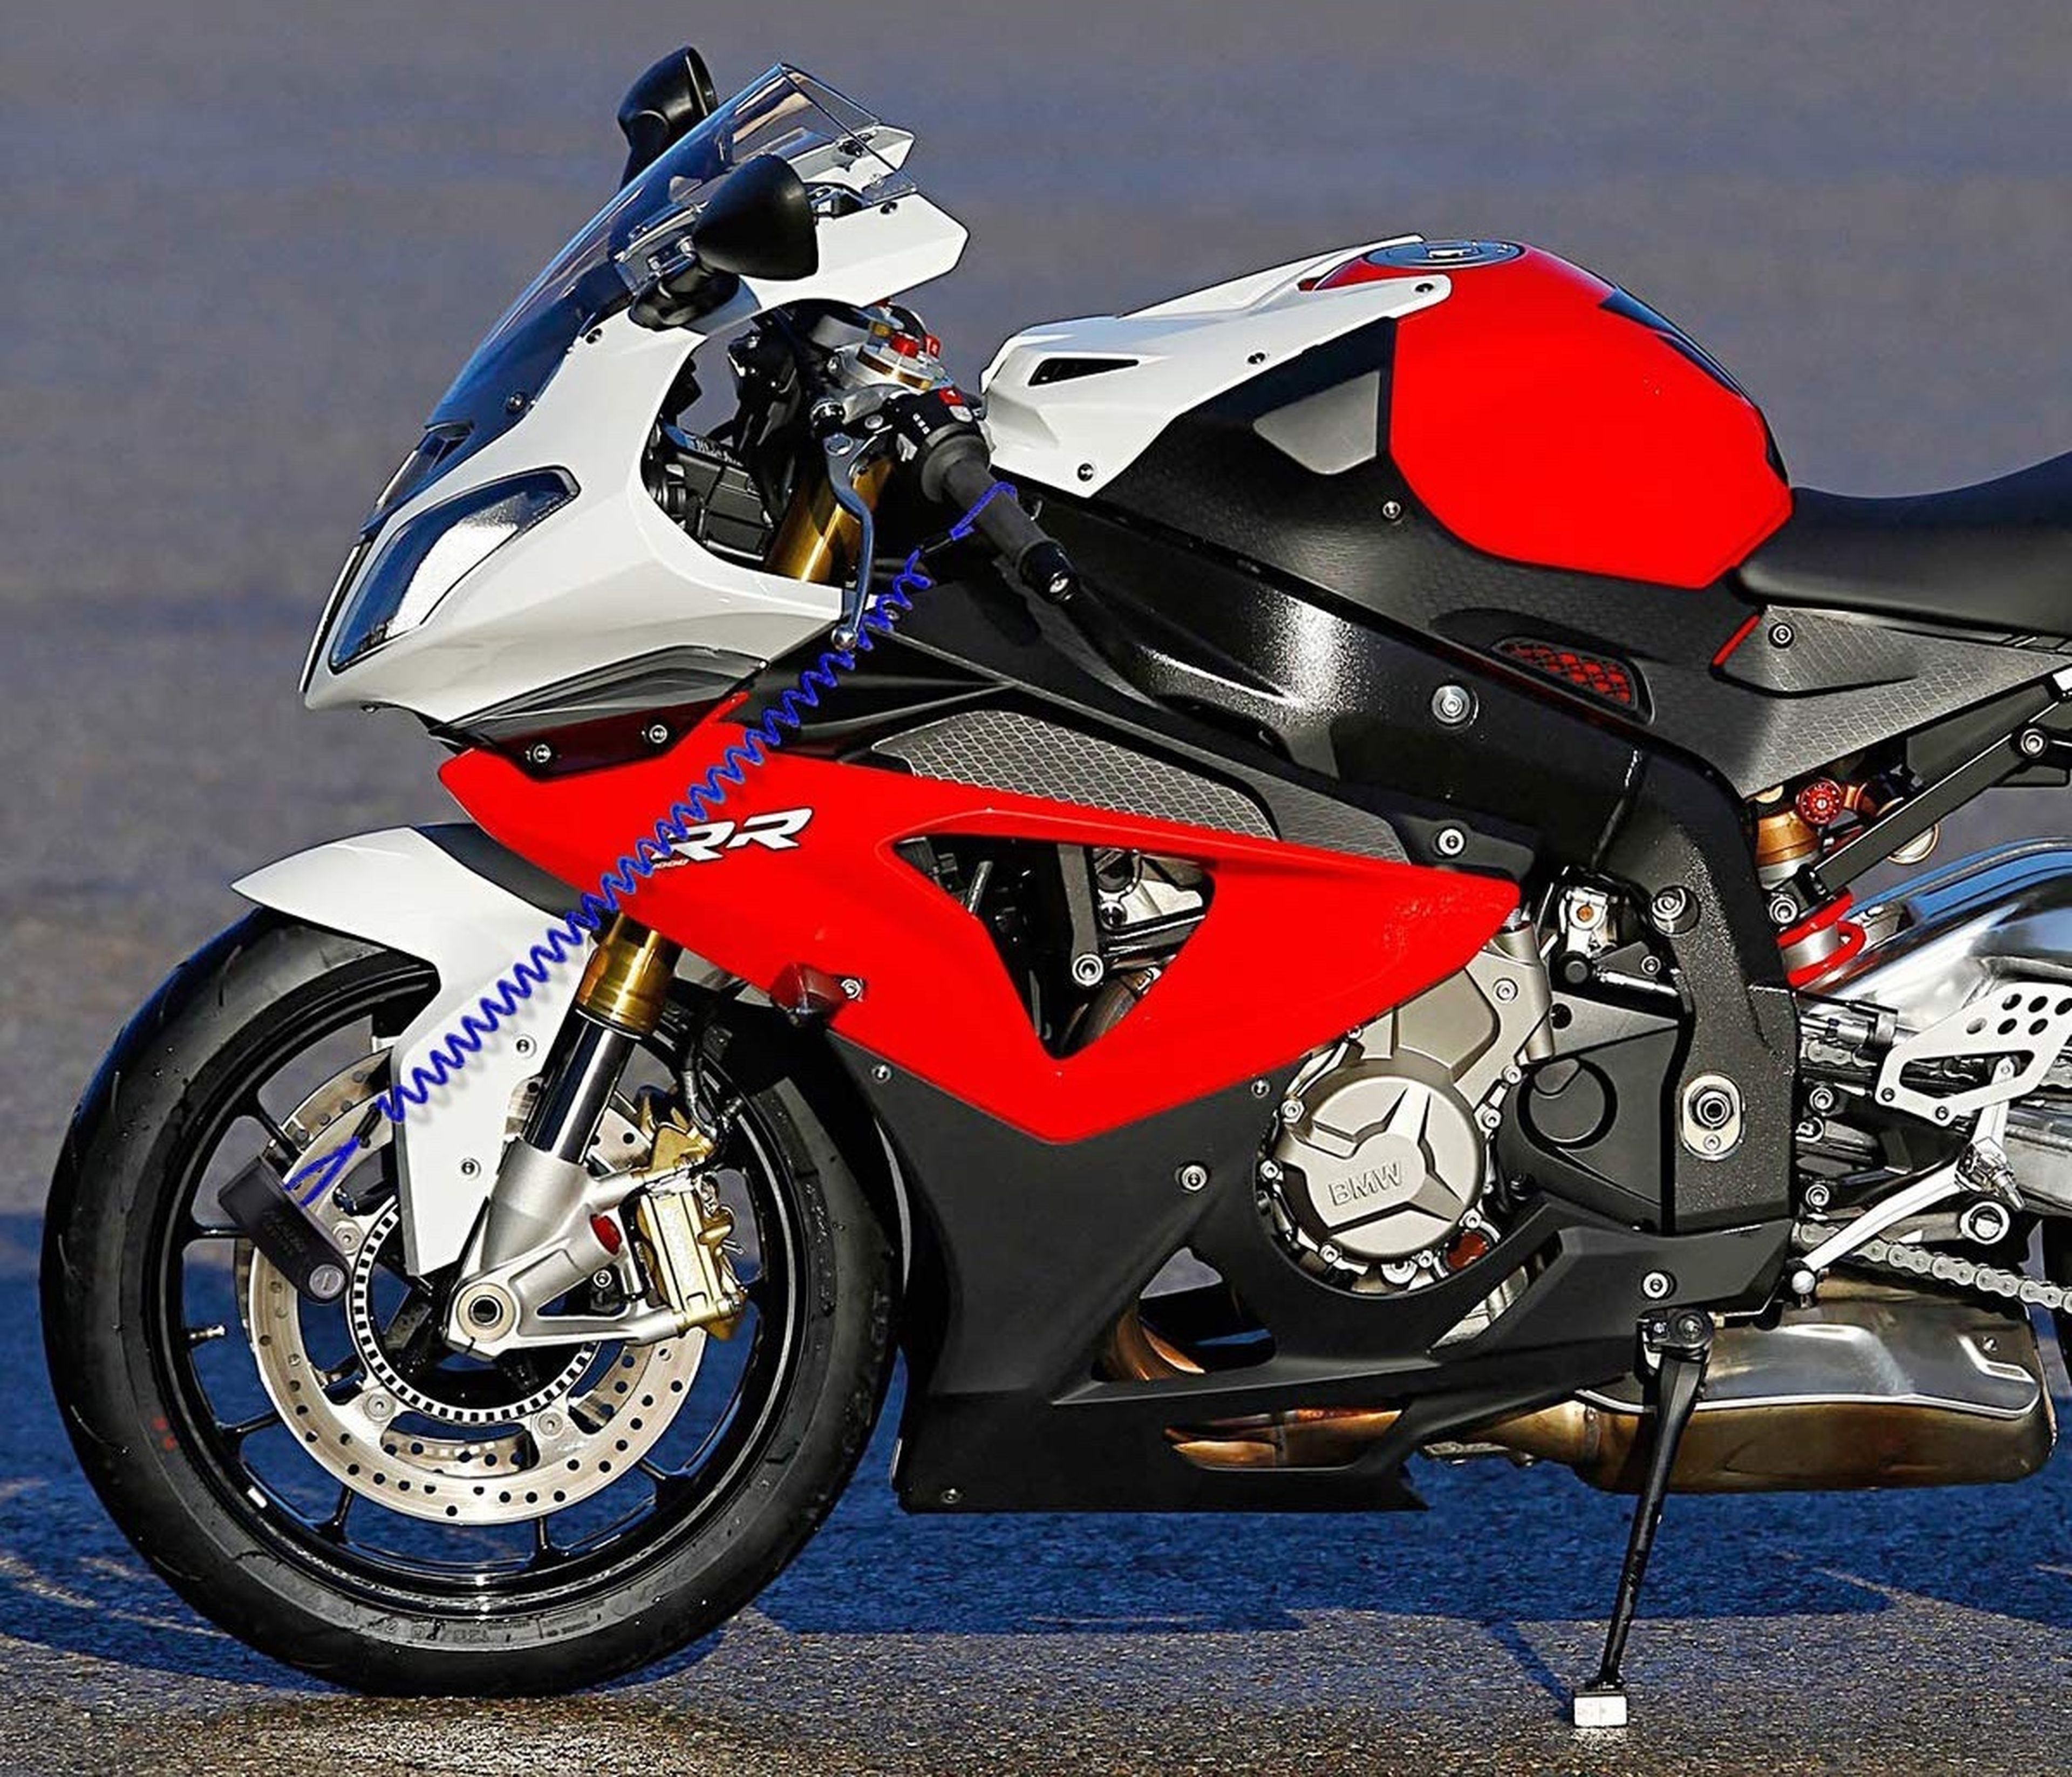 candados para moto candado de motos con Alarma antirrobo motocicleta seguro